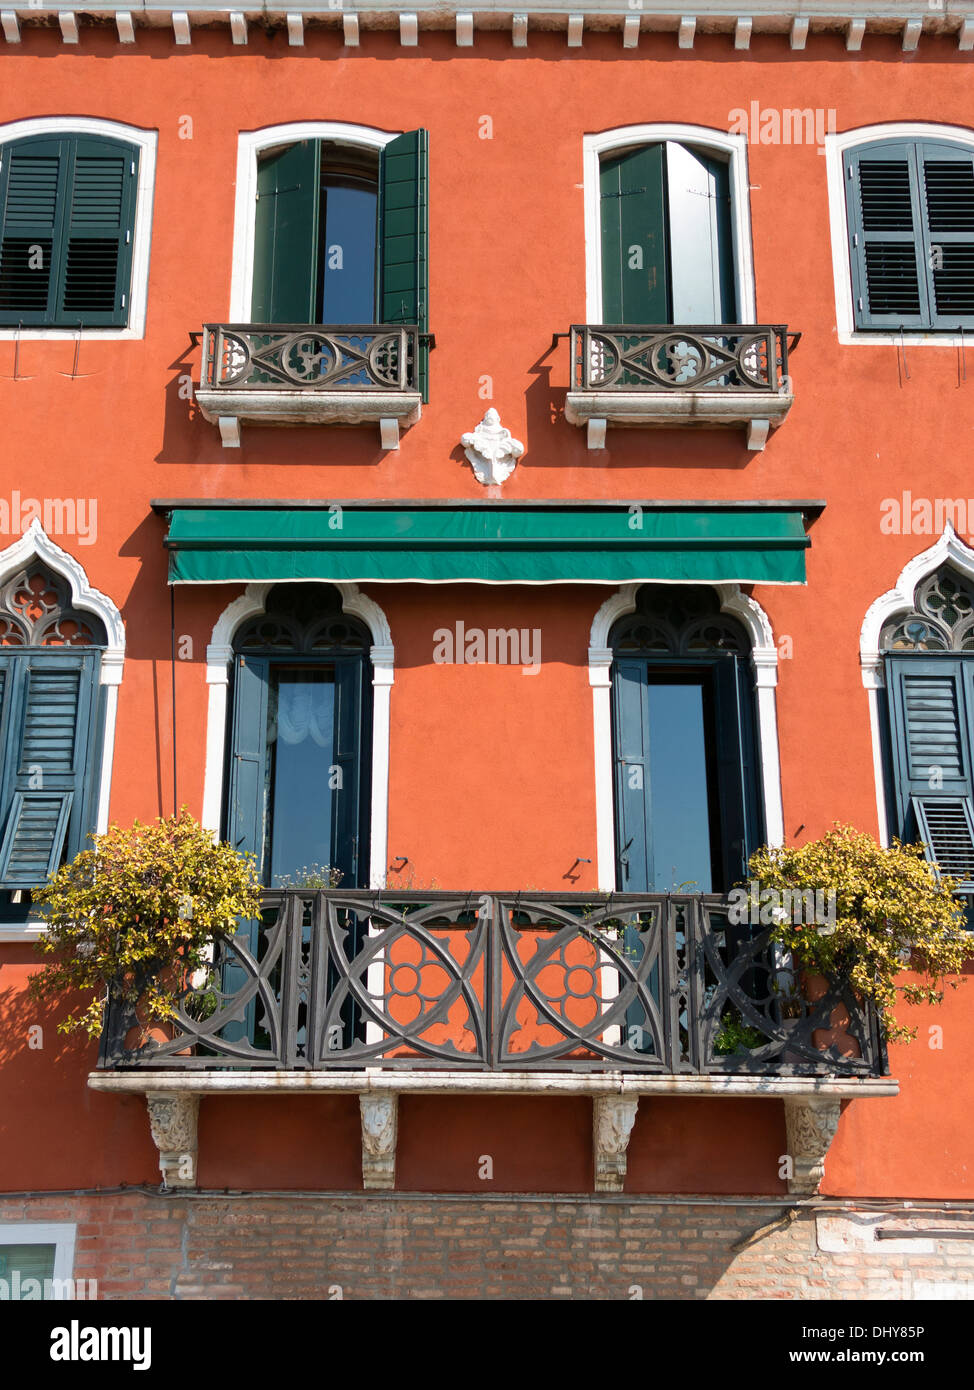 Orange rouge vénitien en terre cuite rendu façade de maison avec des balcons et des volets verts, Venise, Italie. Banque D'Images